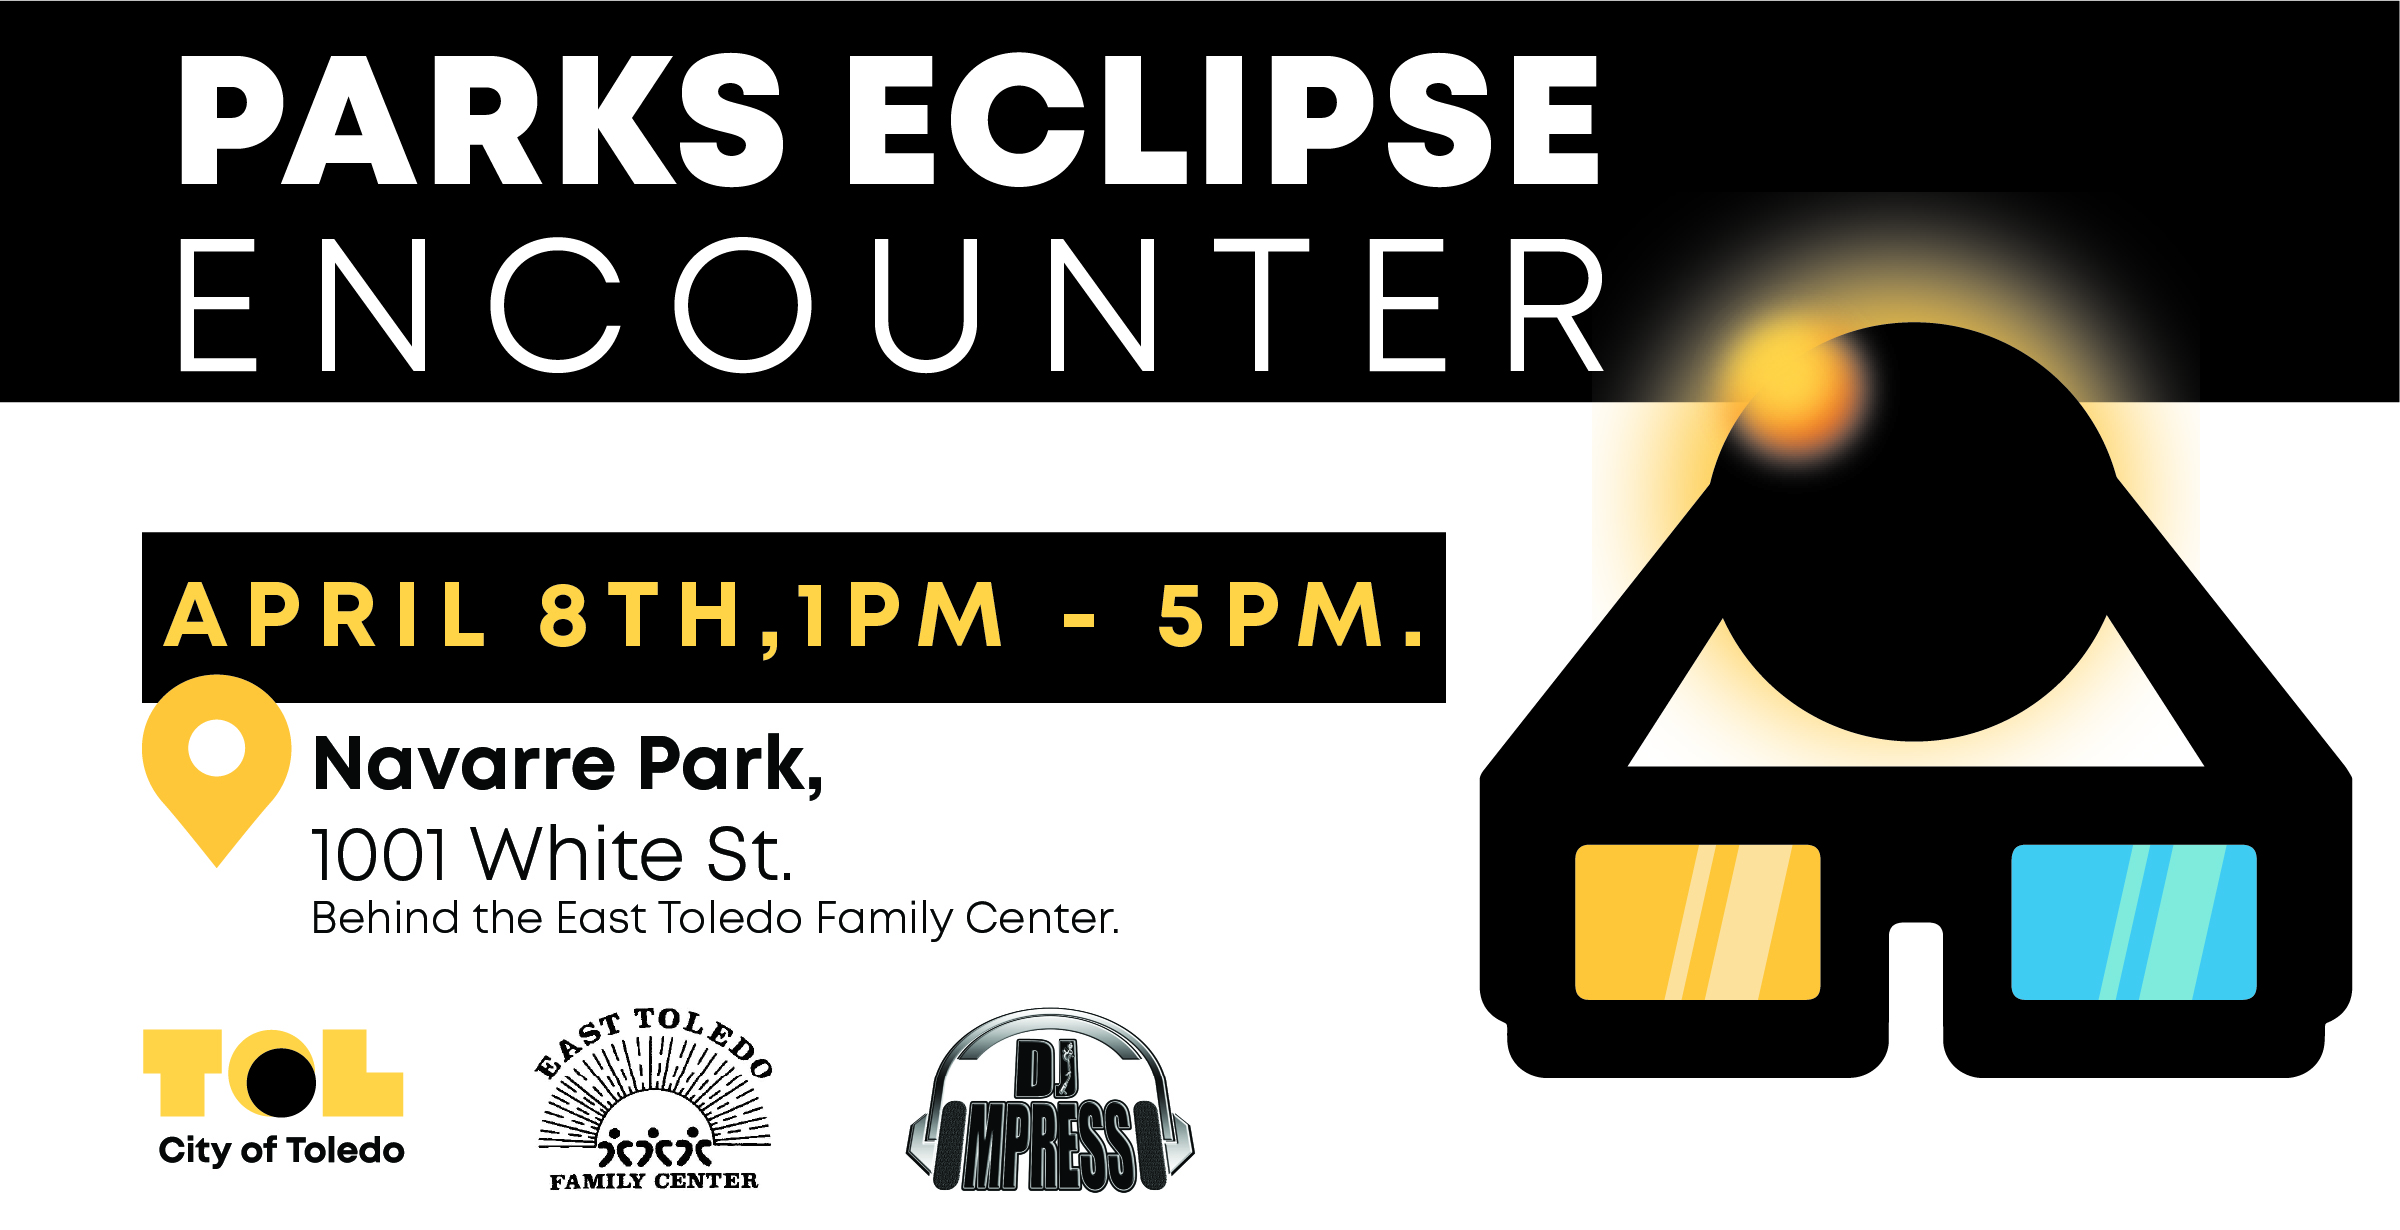 Parks Eclipse Encounter | Navarre Park